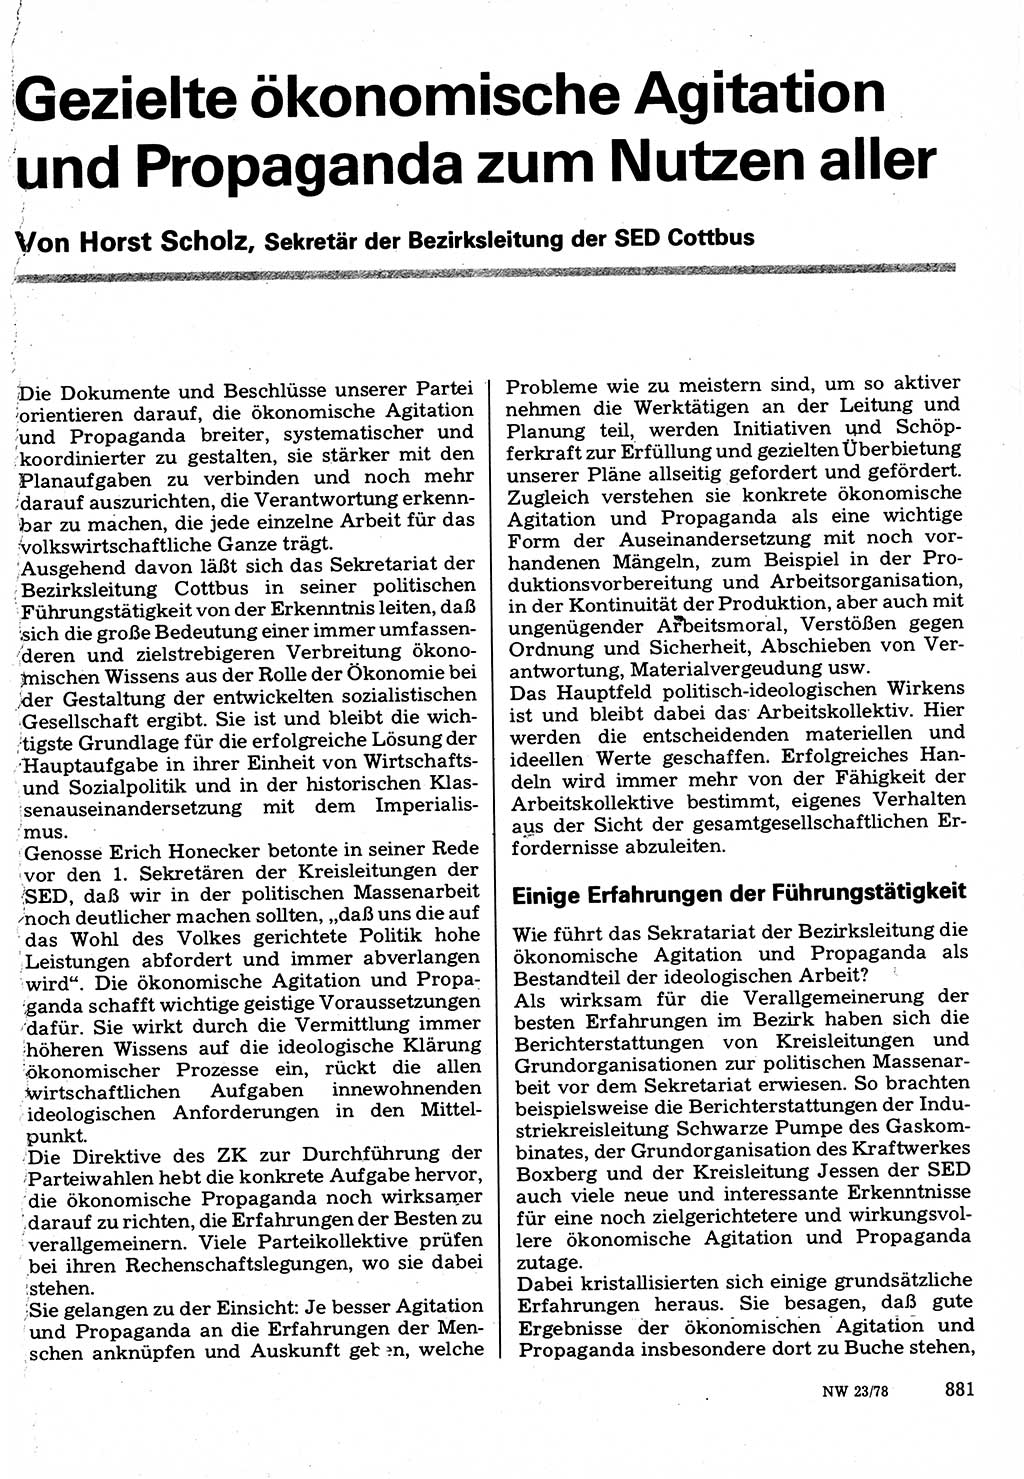 Neuer Weg (NW), Organ des Zentralkomitees (ZK) der SED (Sozialistische Einheitspartei Deutschlands) für Fragen des Parteilebens, 33. Jahrgang [Deutsche Demokratische Republik (DDR)] 1978, Seite 881 (NW ZK SED DDR 1978, S. 881)